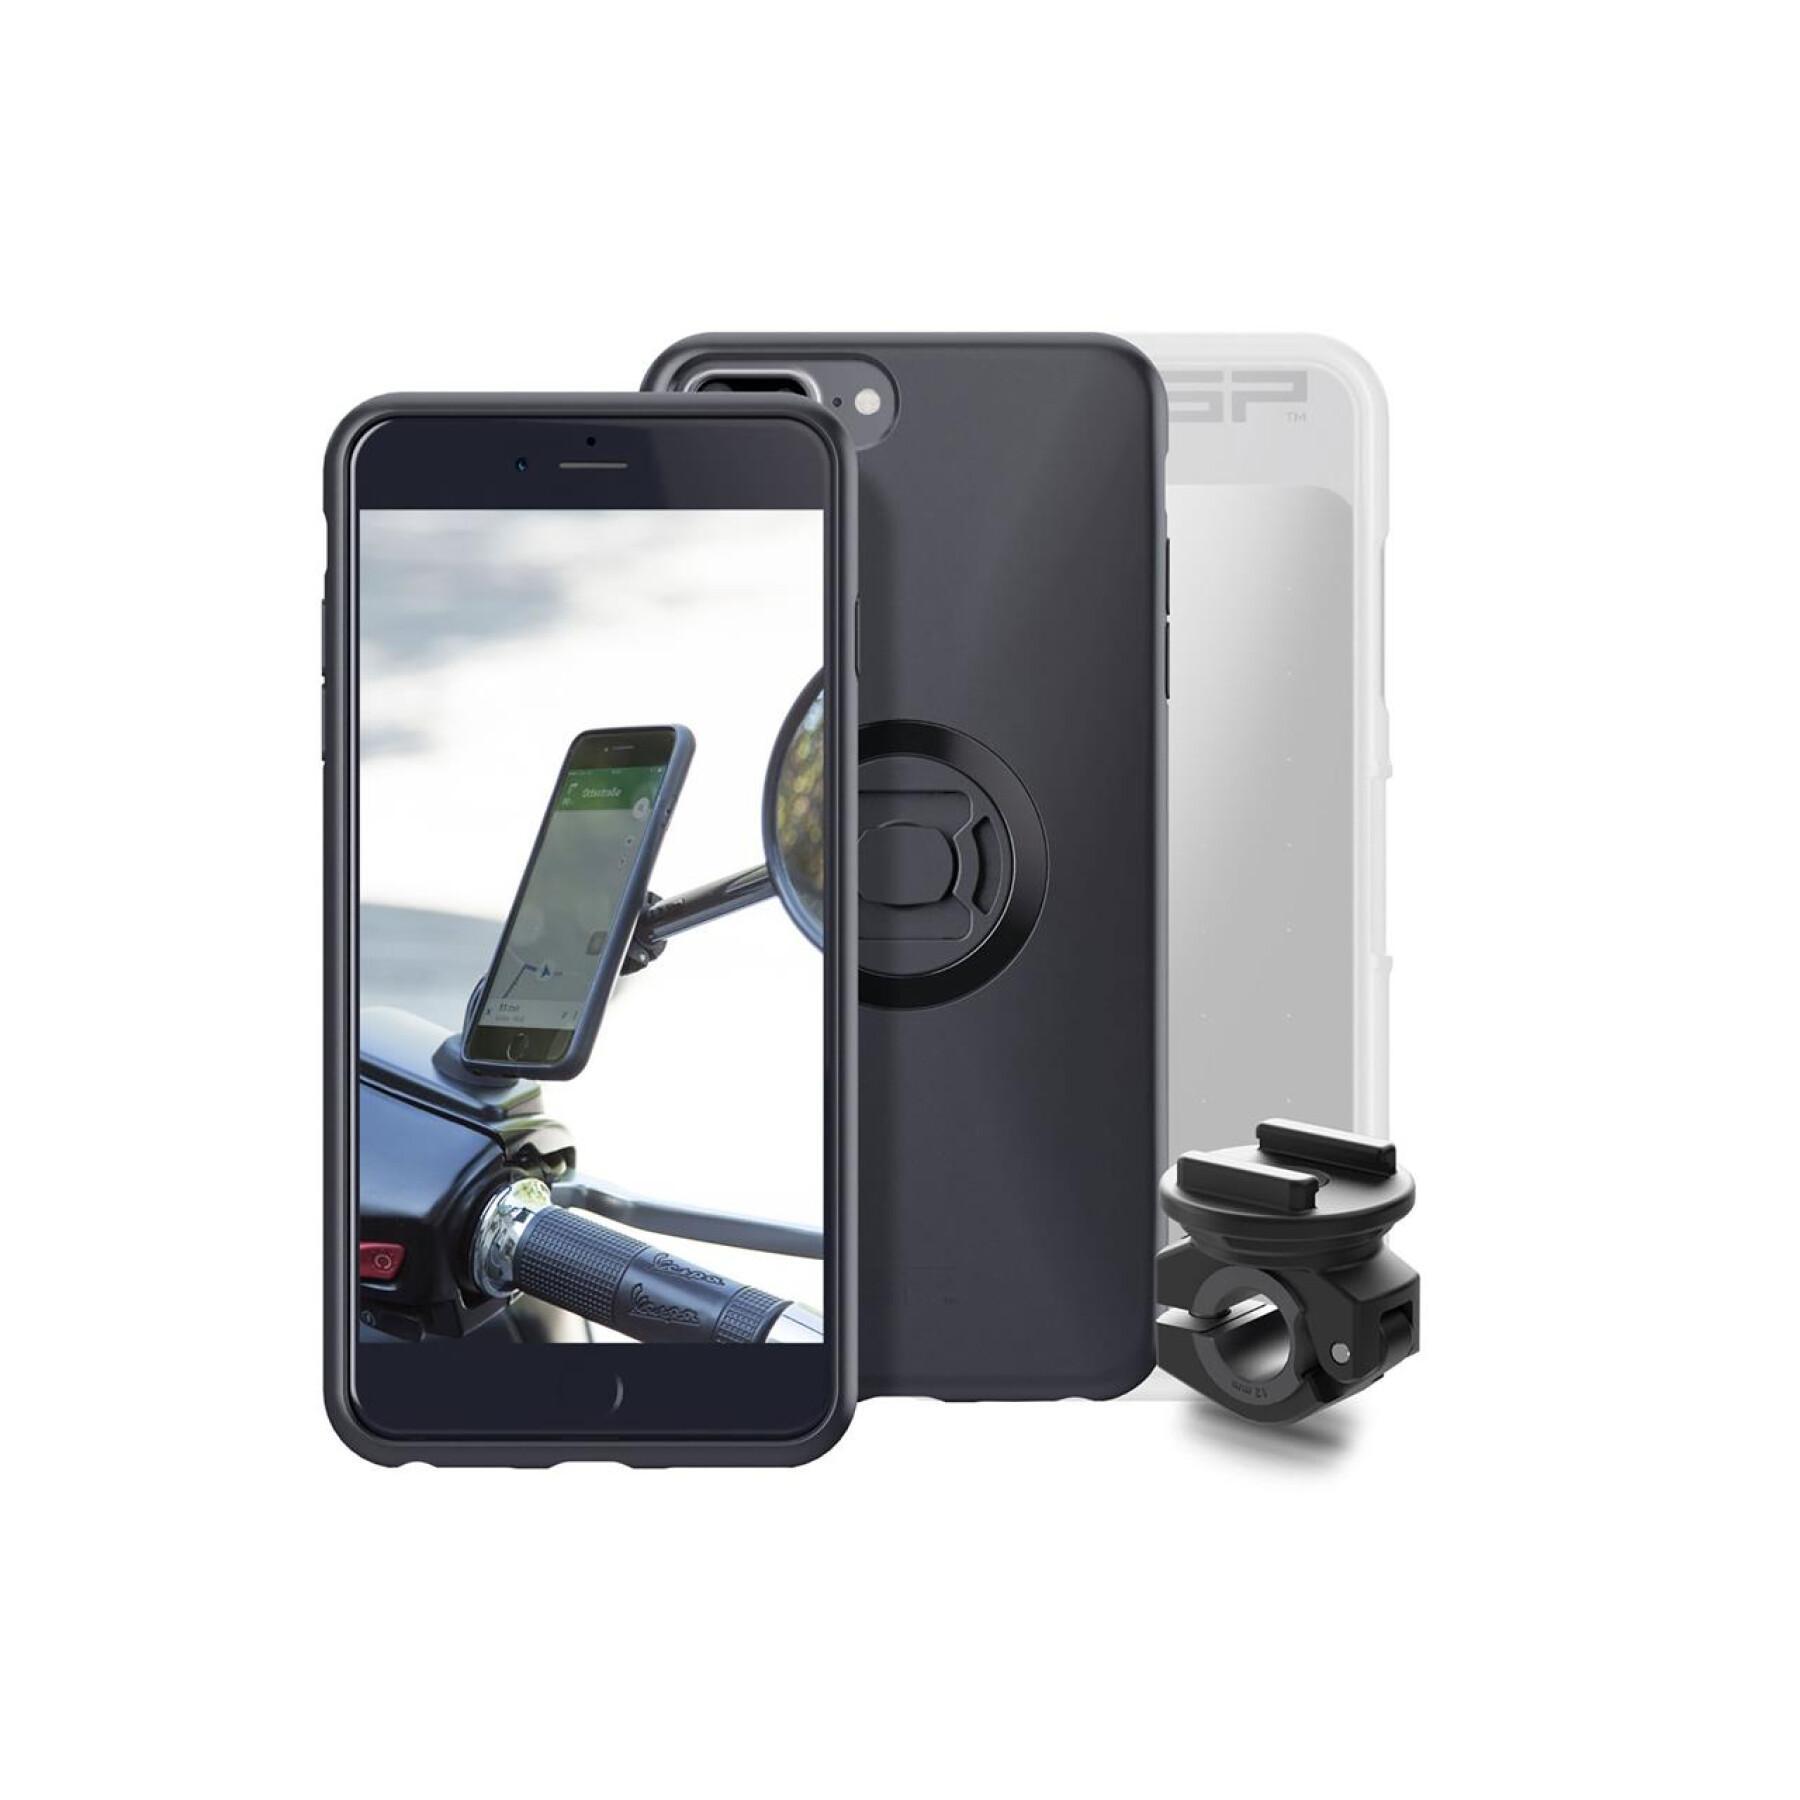 Pacote Sp-Connect Moto Bundle fixé sur rétroviseur iPhone 8+/7+/6S+/6+